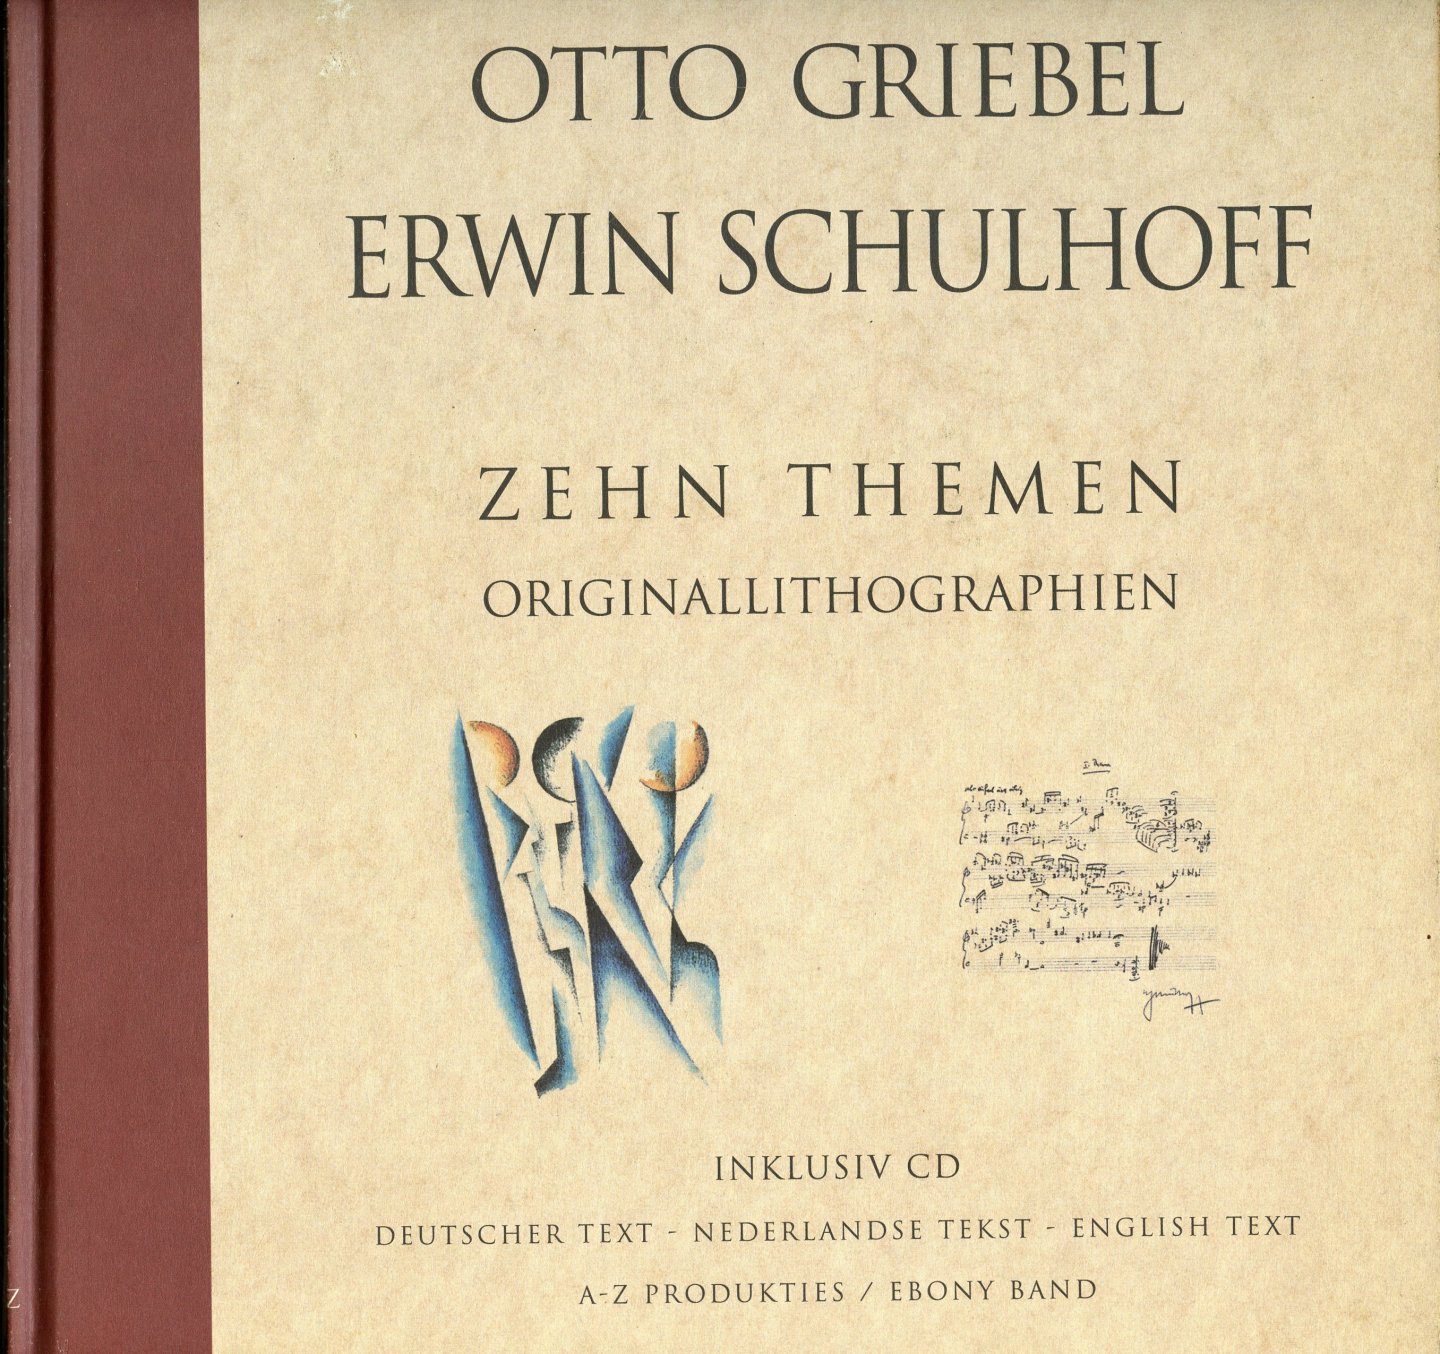 Griebel, Otto/ Schulhoff, Erwin - Otto Griebel/ Erwin Schulhoff: Zehn Themen. Originallithographien (Inklusiv CD)